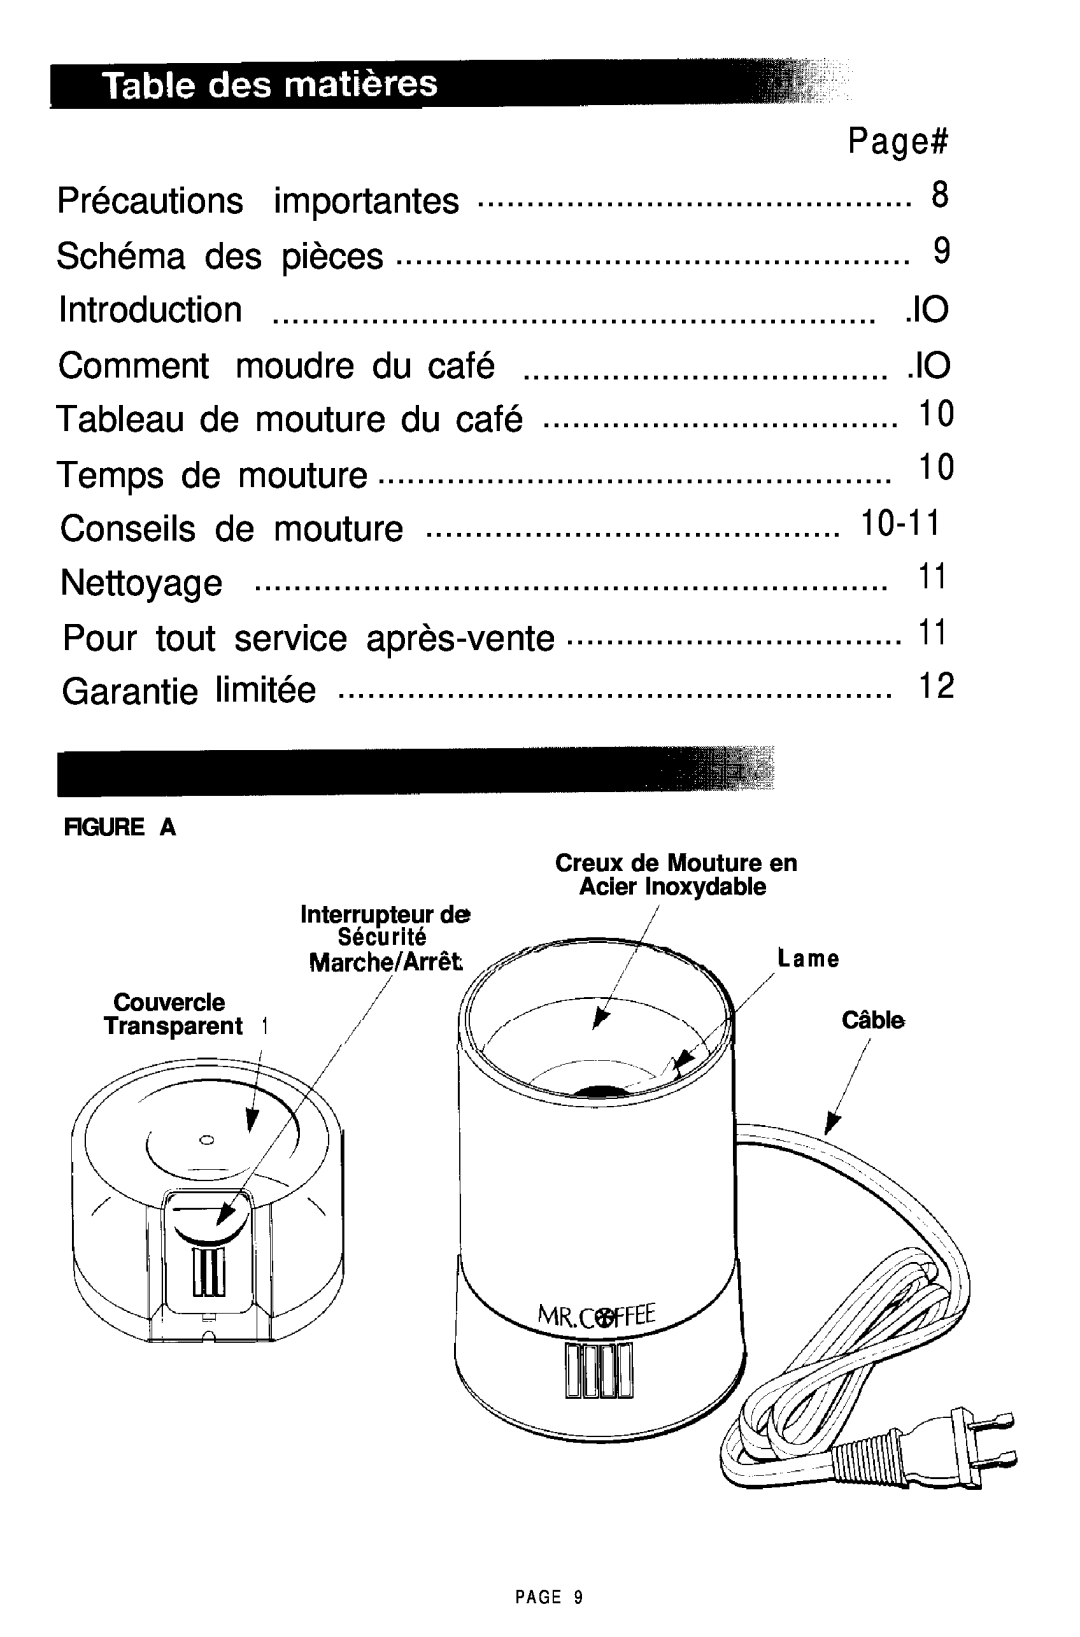 Mr. Coffee COFFEE MILL manual Page#, Introduction, Comment moudre du café, Tableau de mouture du café, Marrhn/ArrAt 